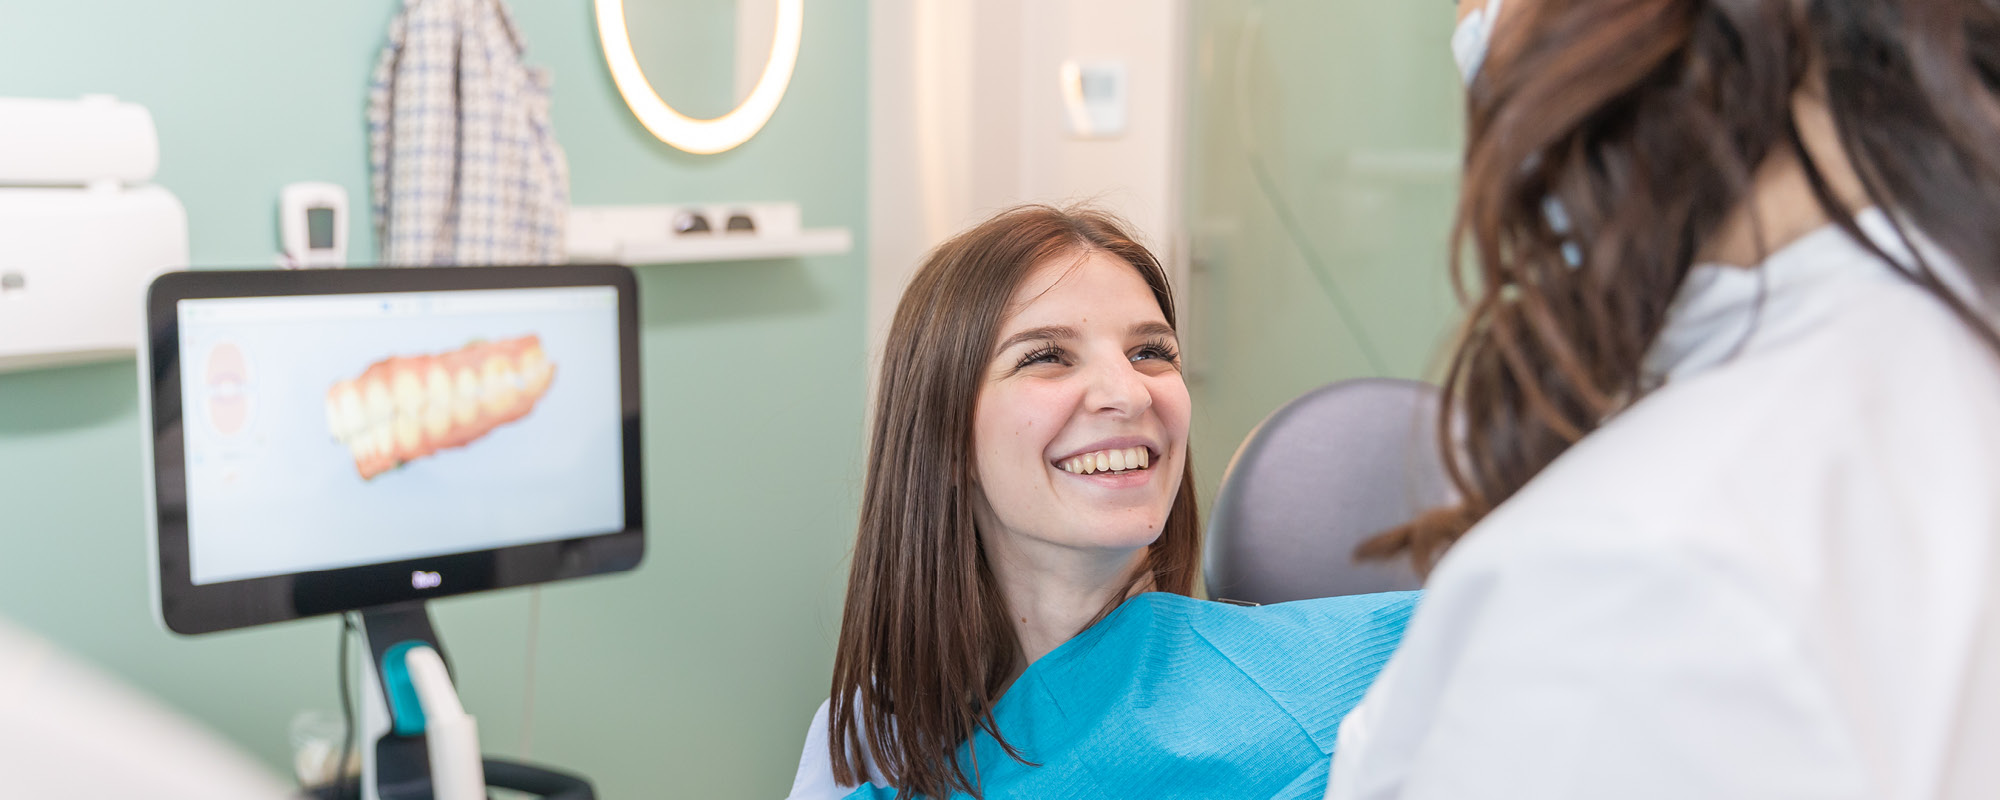 Andare dal dentista dopo le vacanze estive: perché il Check-up dentistico è importante?